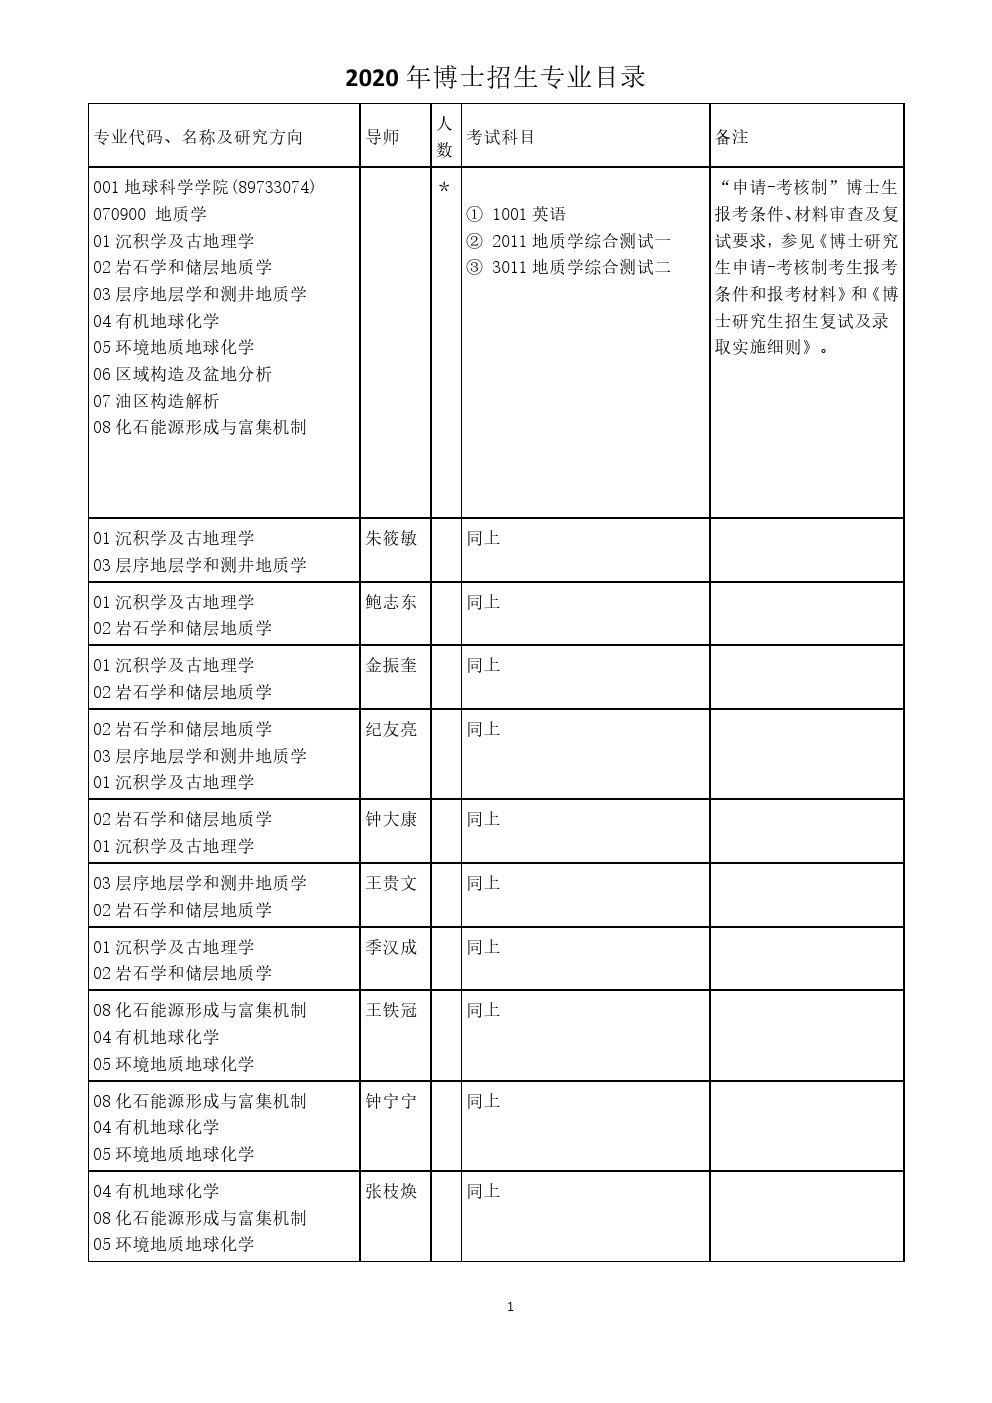 中国石油大学(北京)2020年博士研究生招生专业目录(学术型)